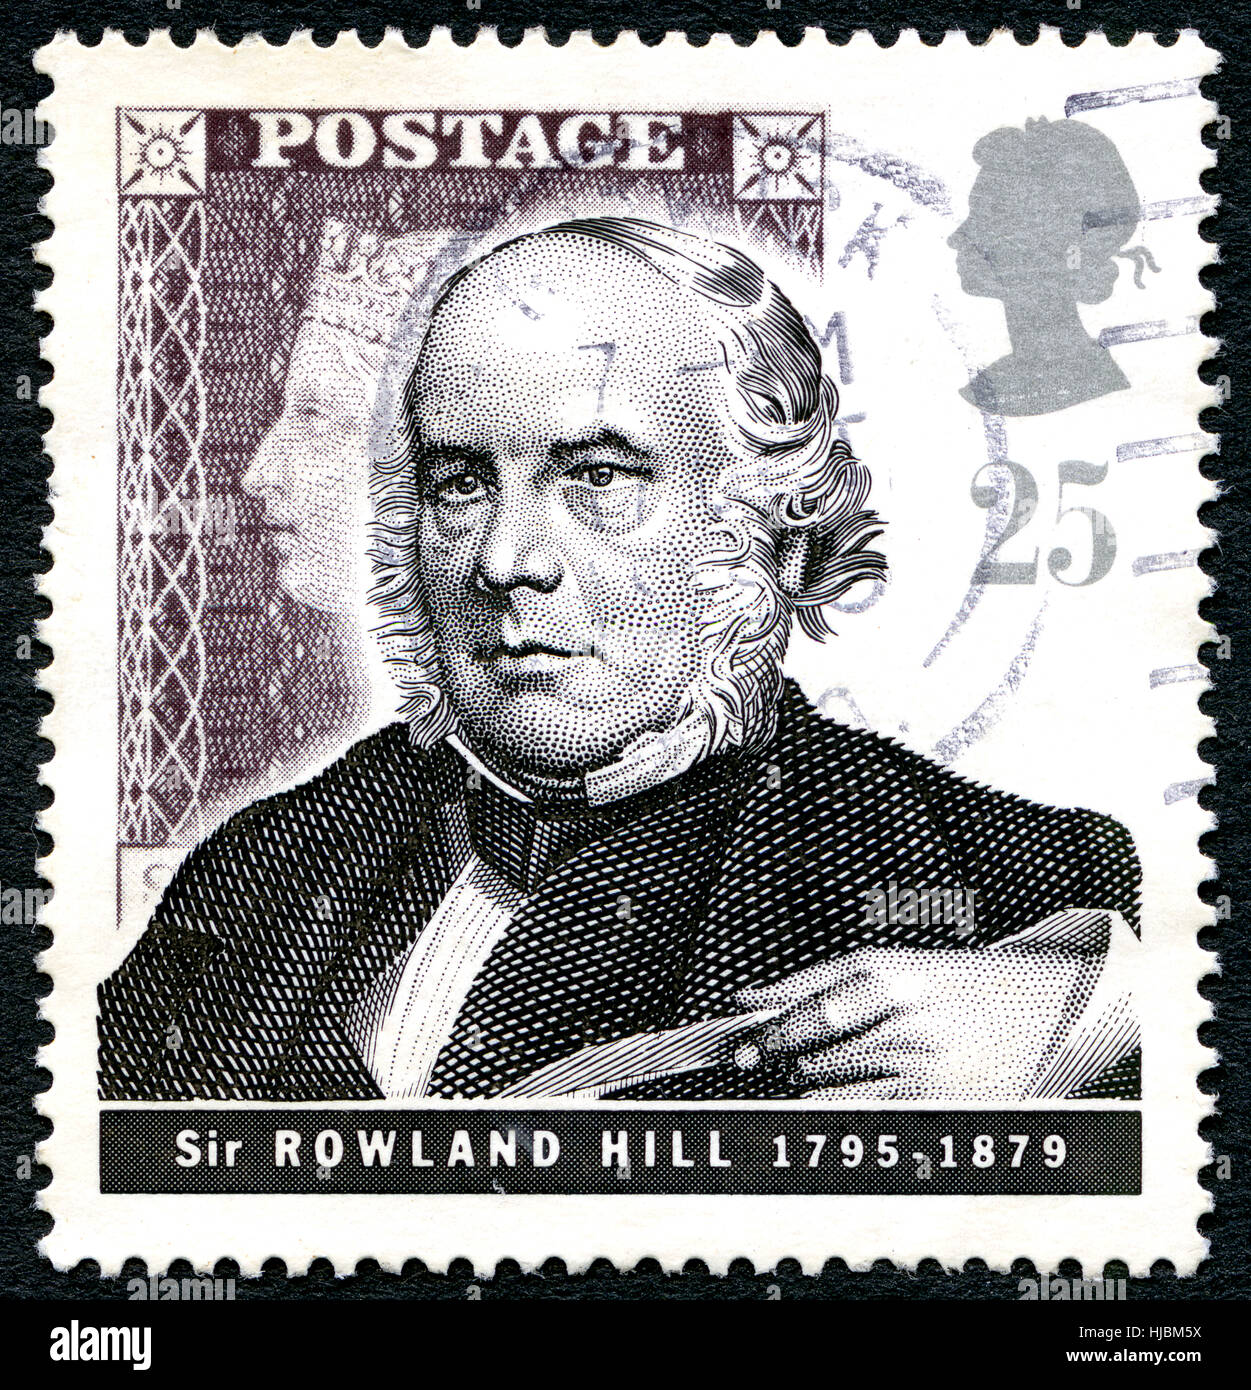 Gran Bretaña: circa 1979: Un sello utilizado en el Reino Unido, mostrando un retrato de la profesora de inglés, inventor y reformador social Sir Rowland Hill, Foto de stock